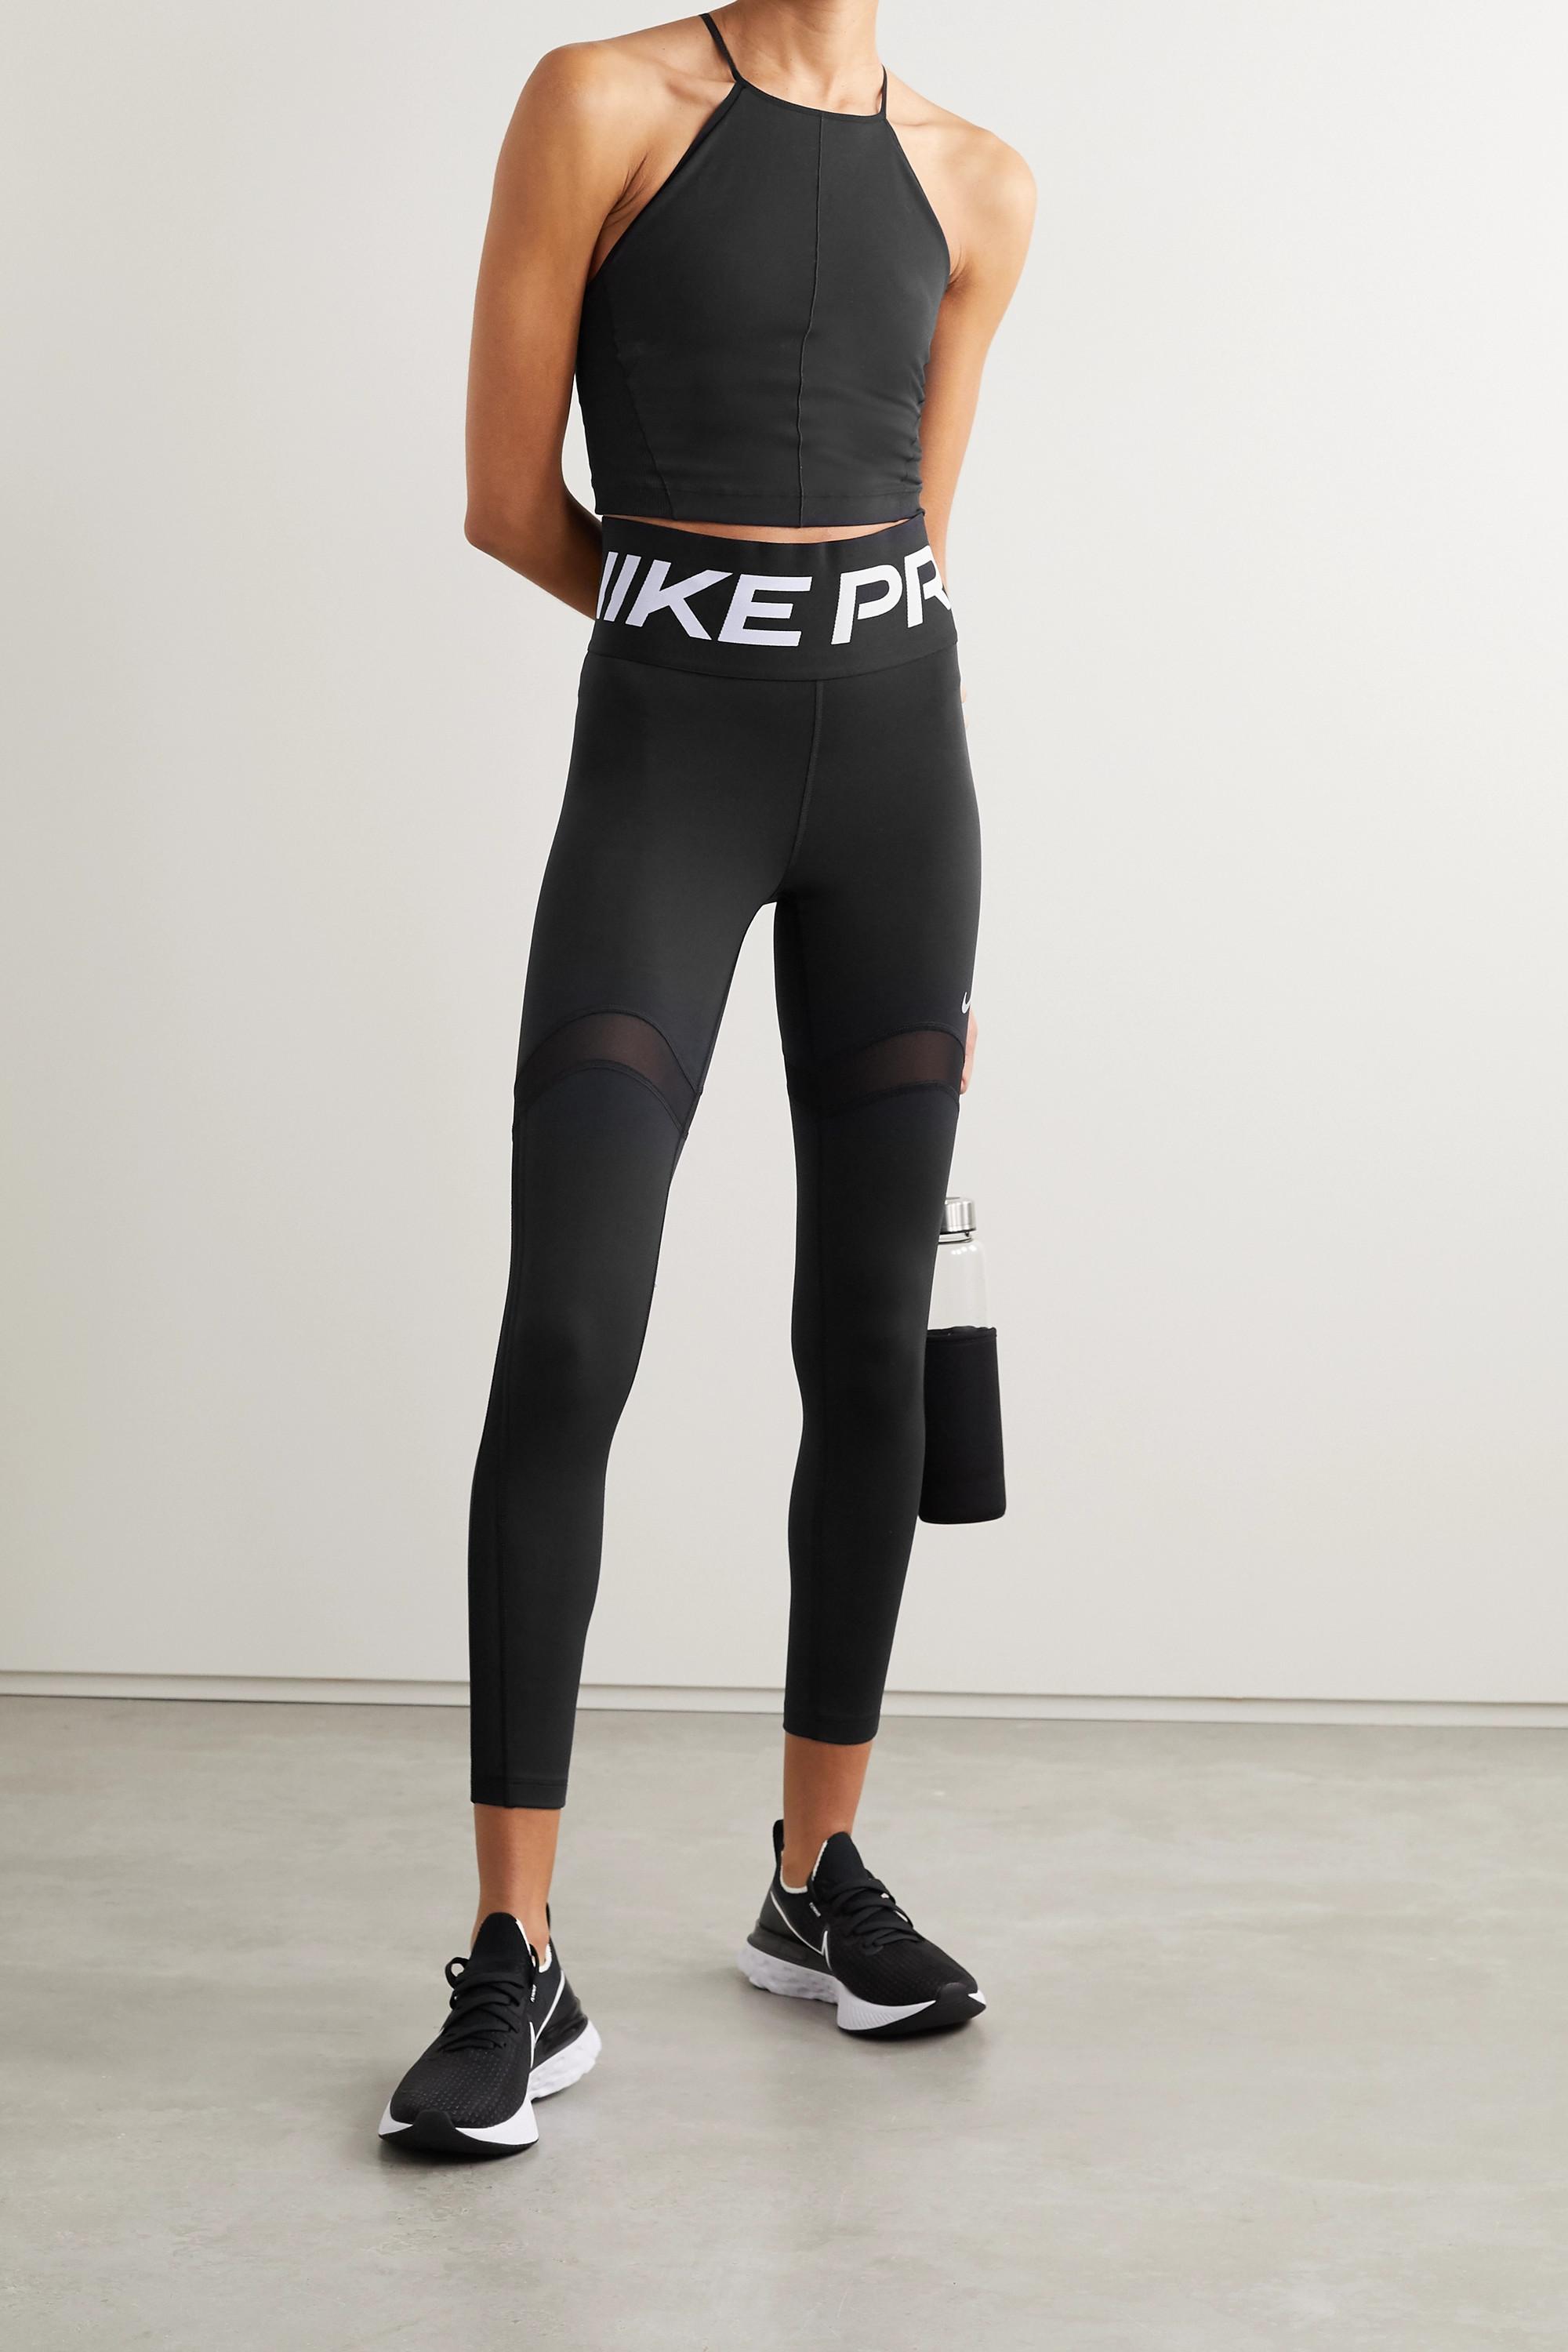 Nike Dri-fit leggings in Black